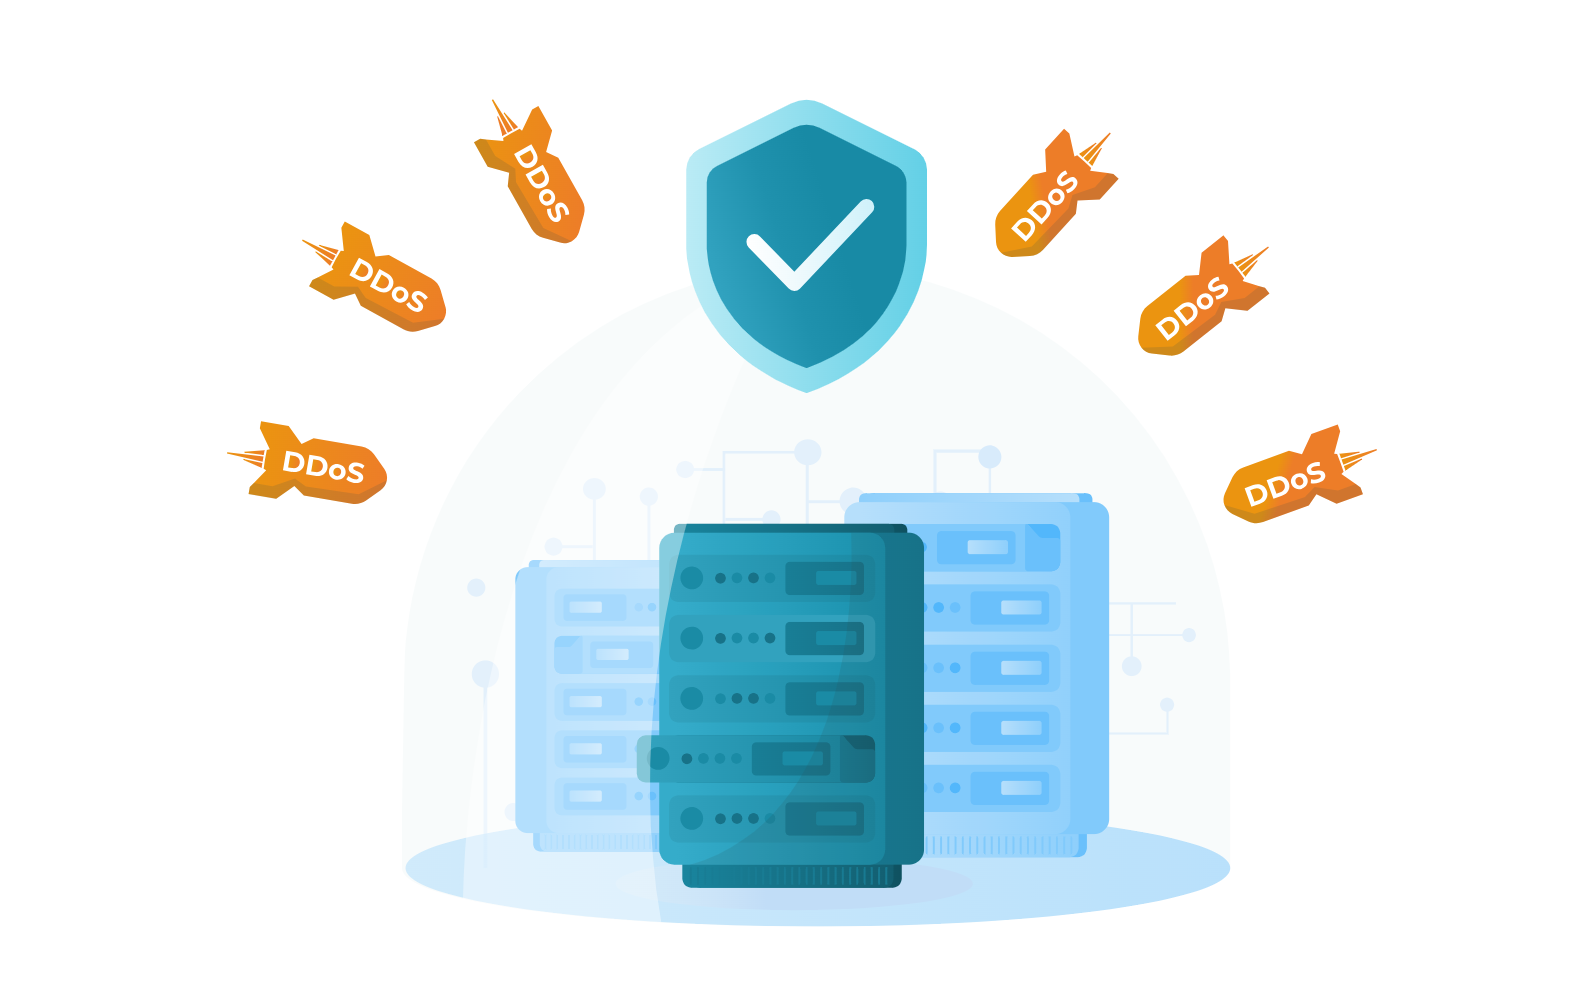 Дополнительные меры защиты ВКС-серверов от DDoS-атак 1